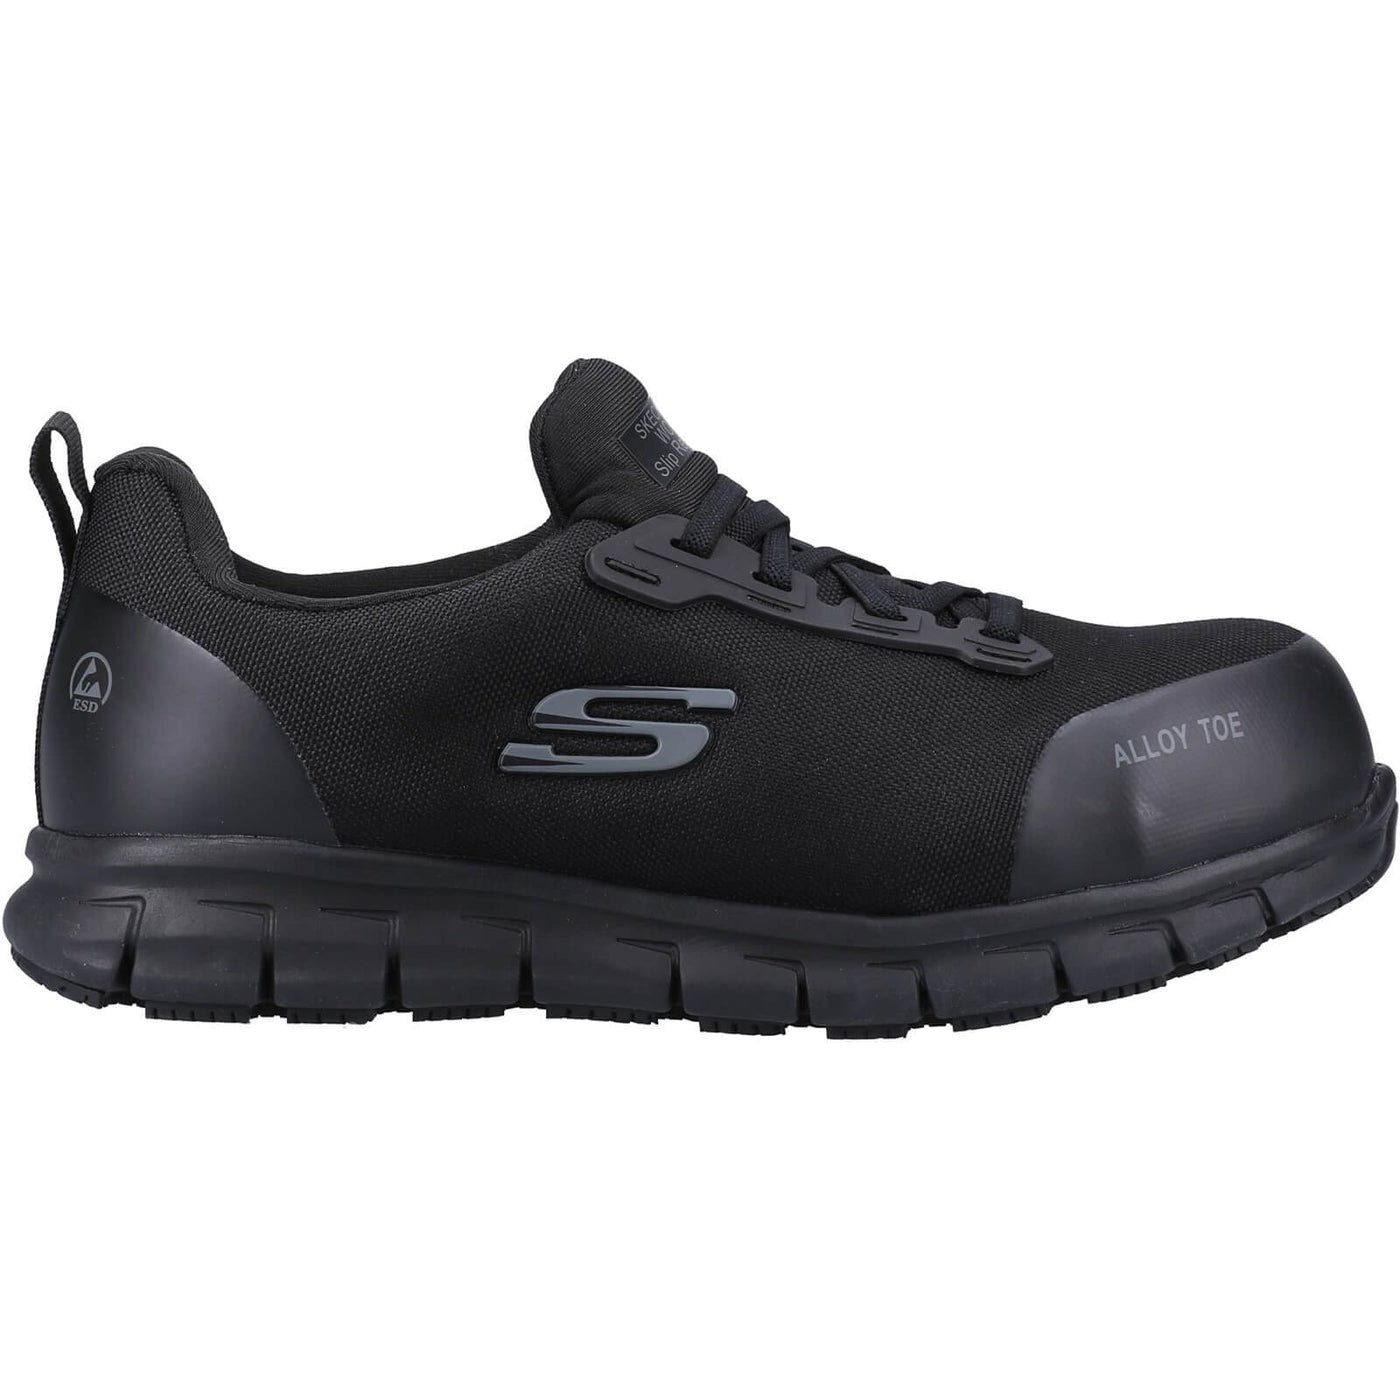 Skechers Sure Track Jixie Safety Shoes Black 4#colour_black